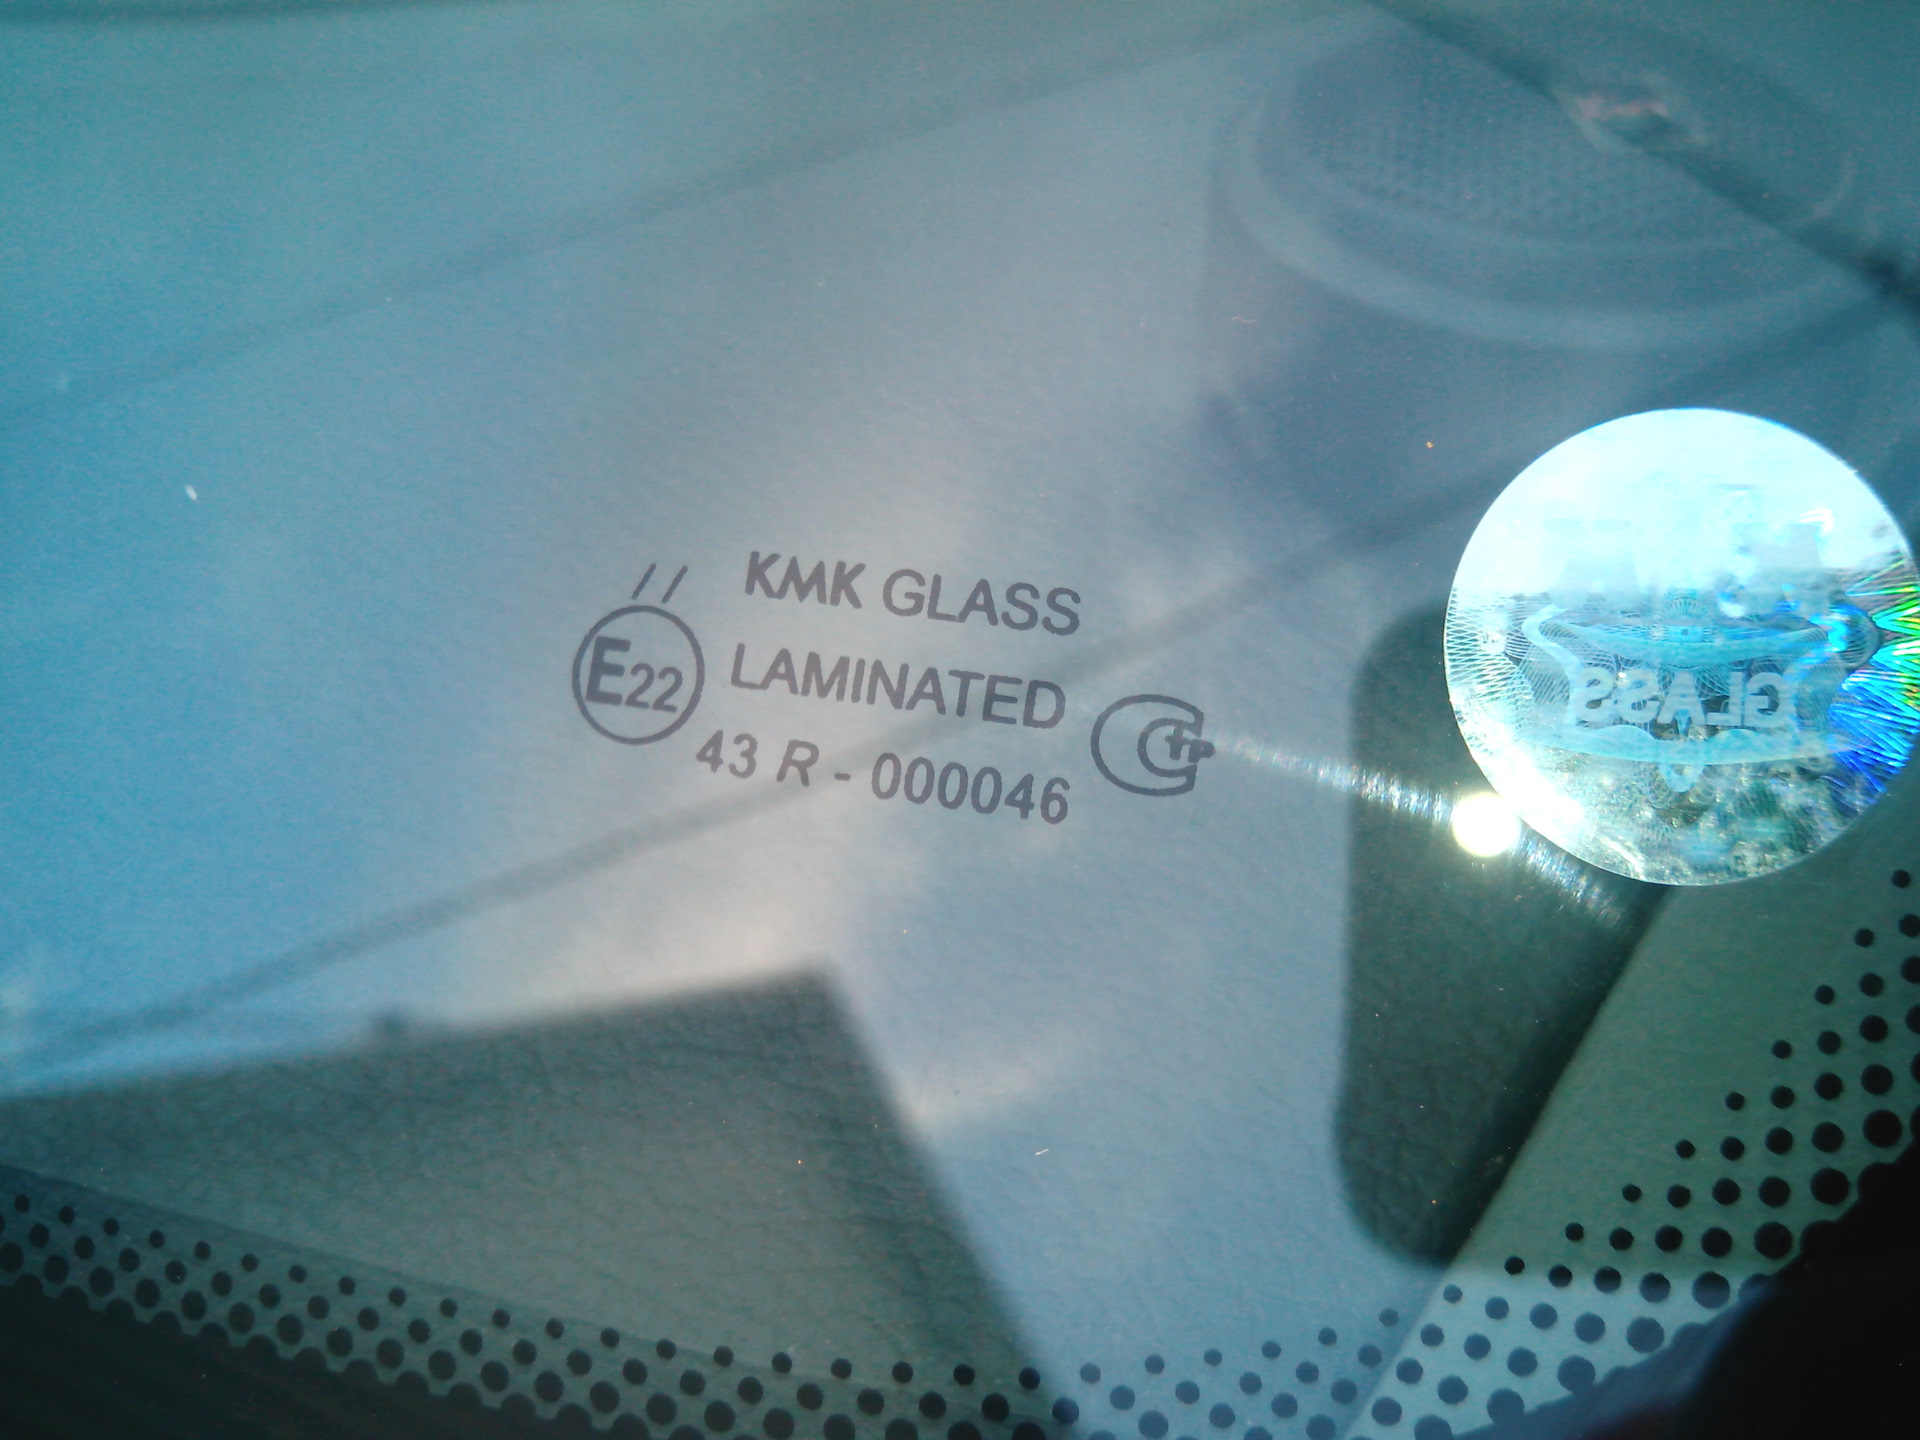 Стекло кмк производитель. Стекло KMK Glass Laminated 43r 000046. KMK Glass Laminated 43r-000046 лобовое стекло. KMK Glass лобовое стекло 43r-000045. KMK Glass Laminated 43r-000046 лобовое стекло Логан.